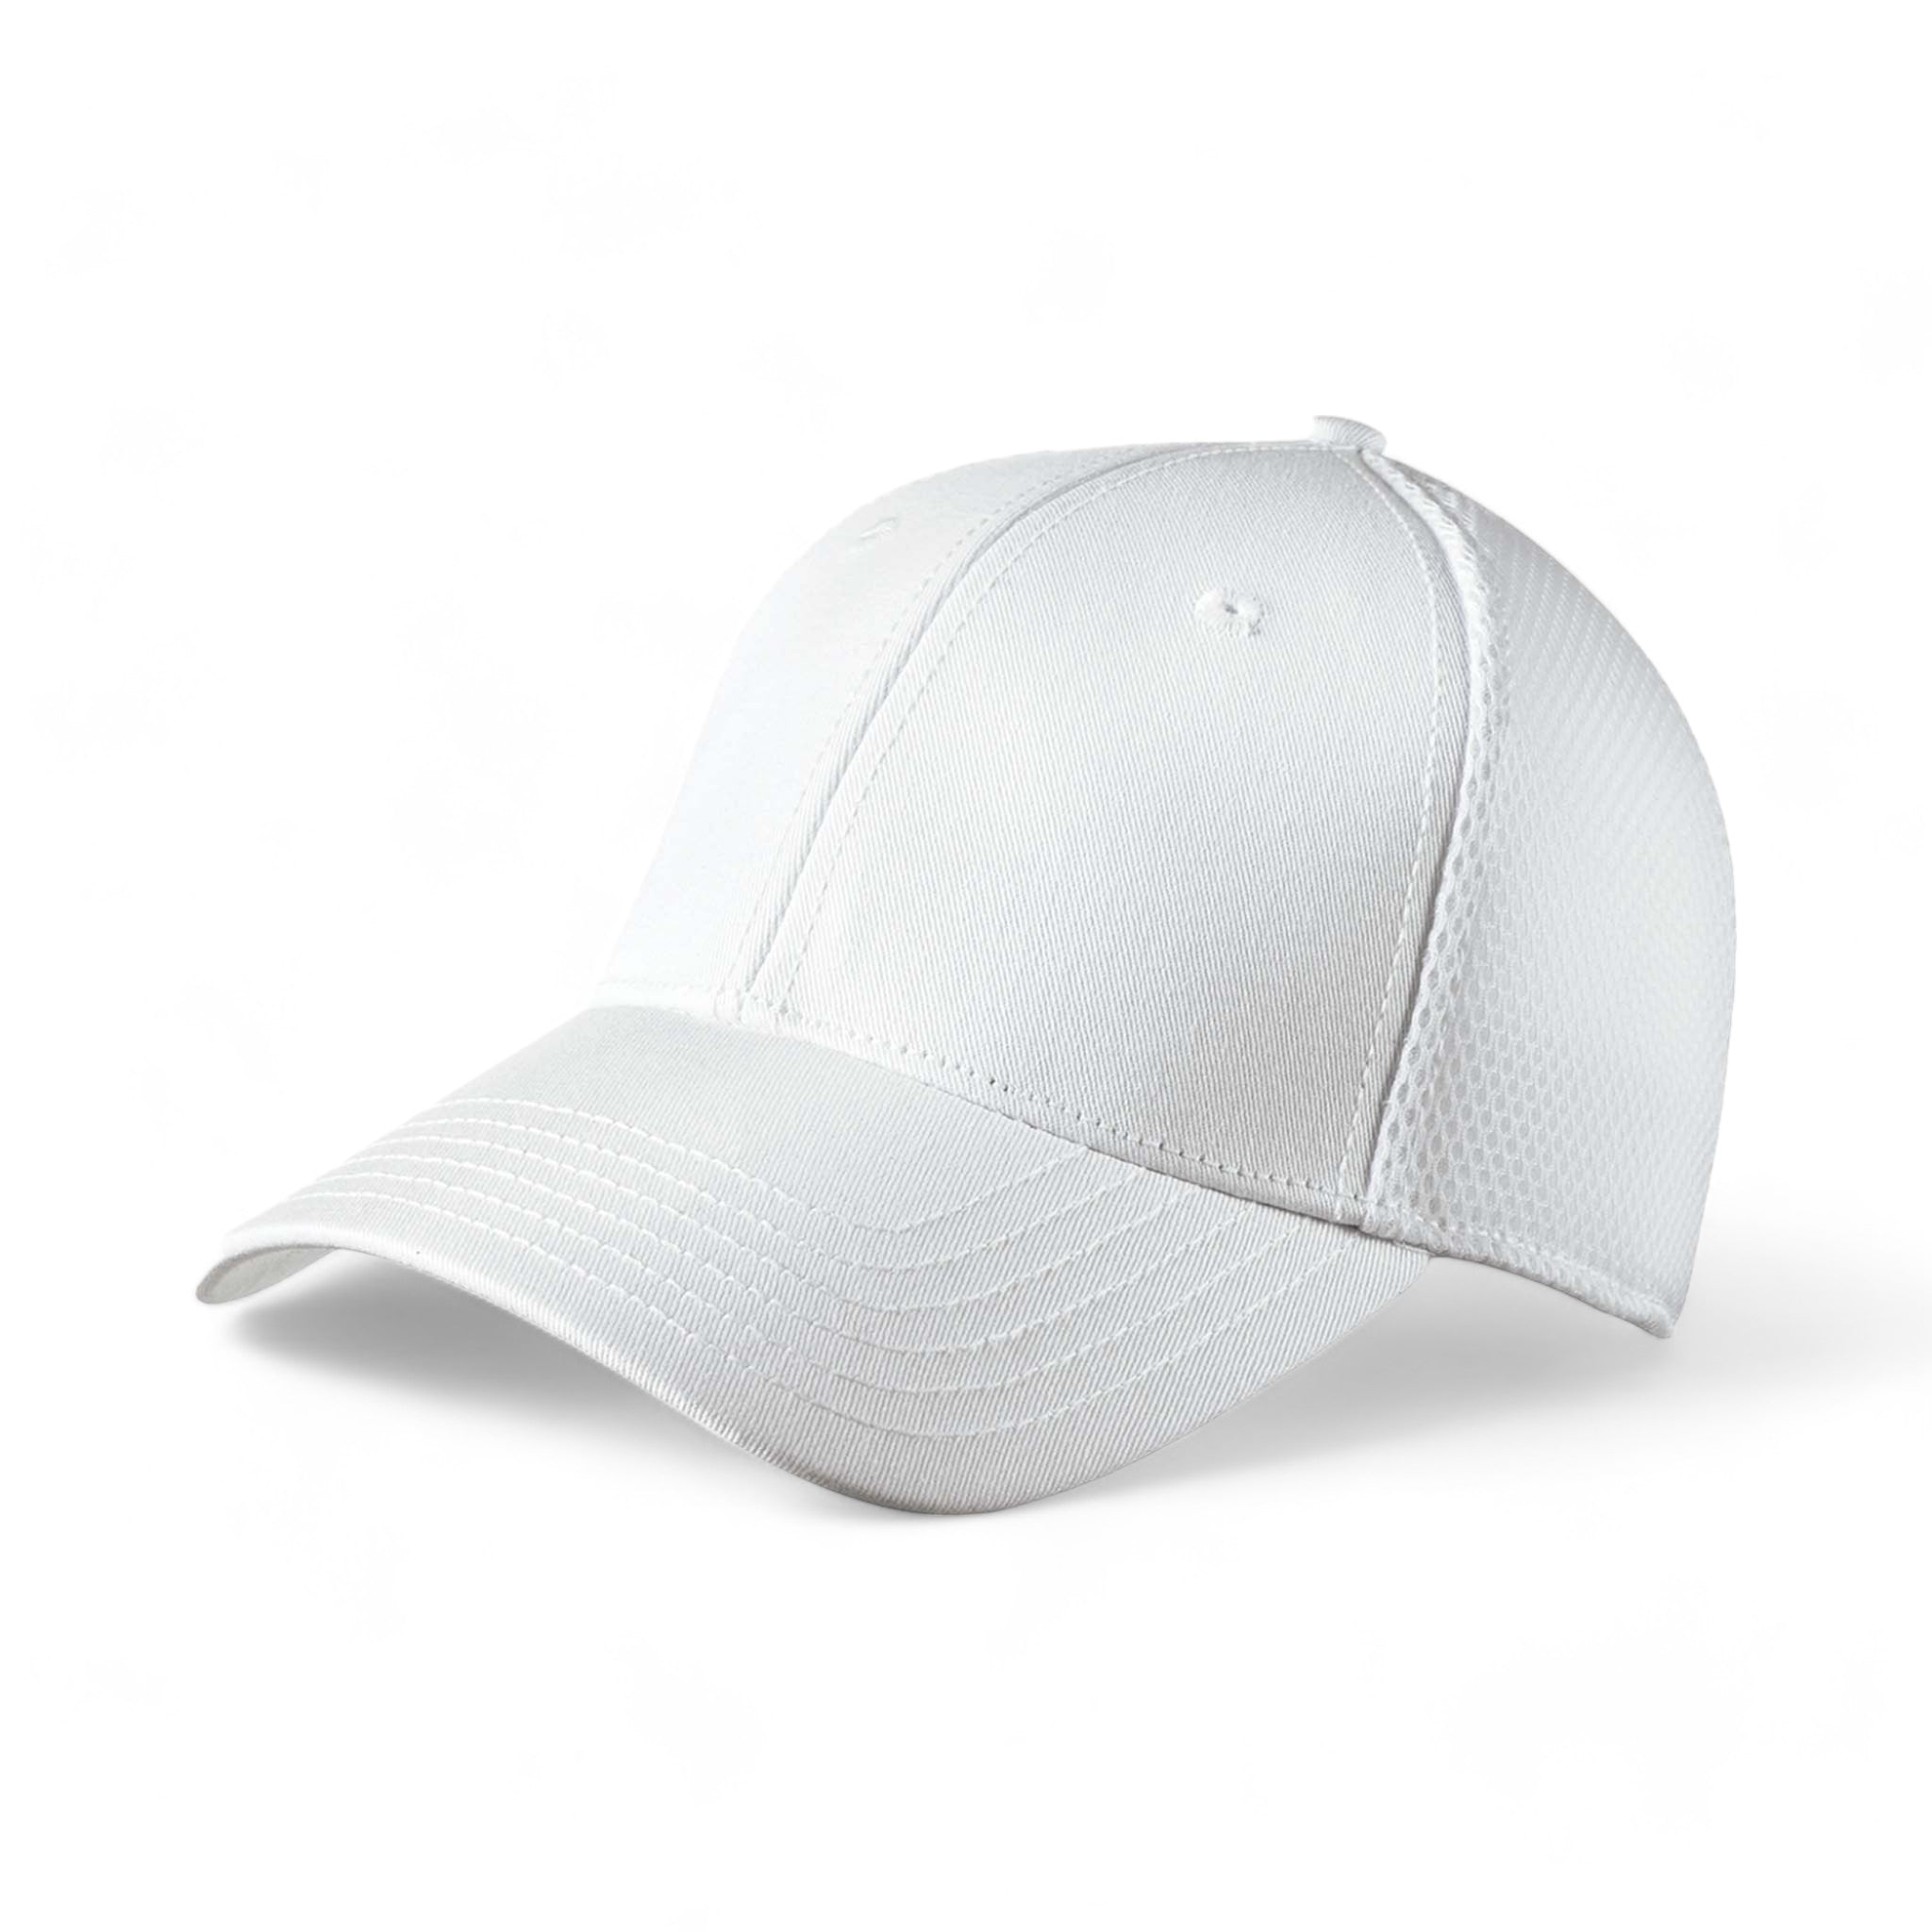 Side view of New Era NE1020 custom hat in white